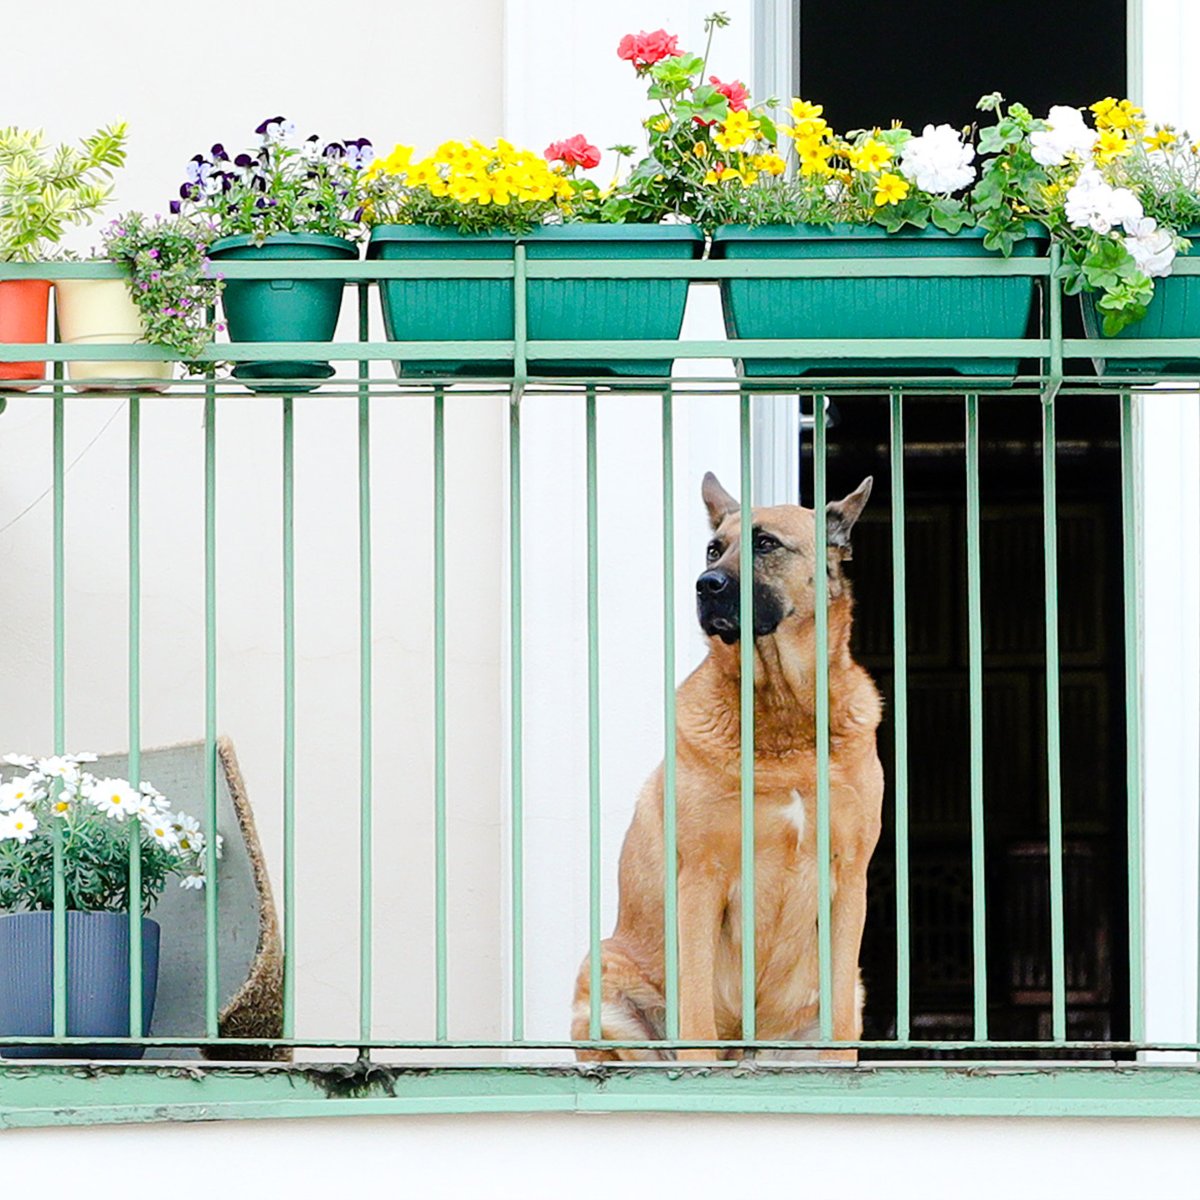 forlade Tal til Mægtig Hund in Ostfriesland muss auf Balkon leben - es kommt noch viel schlimmer -  moin.de